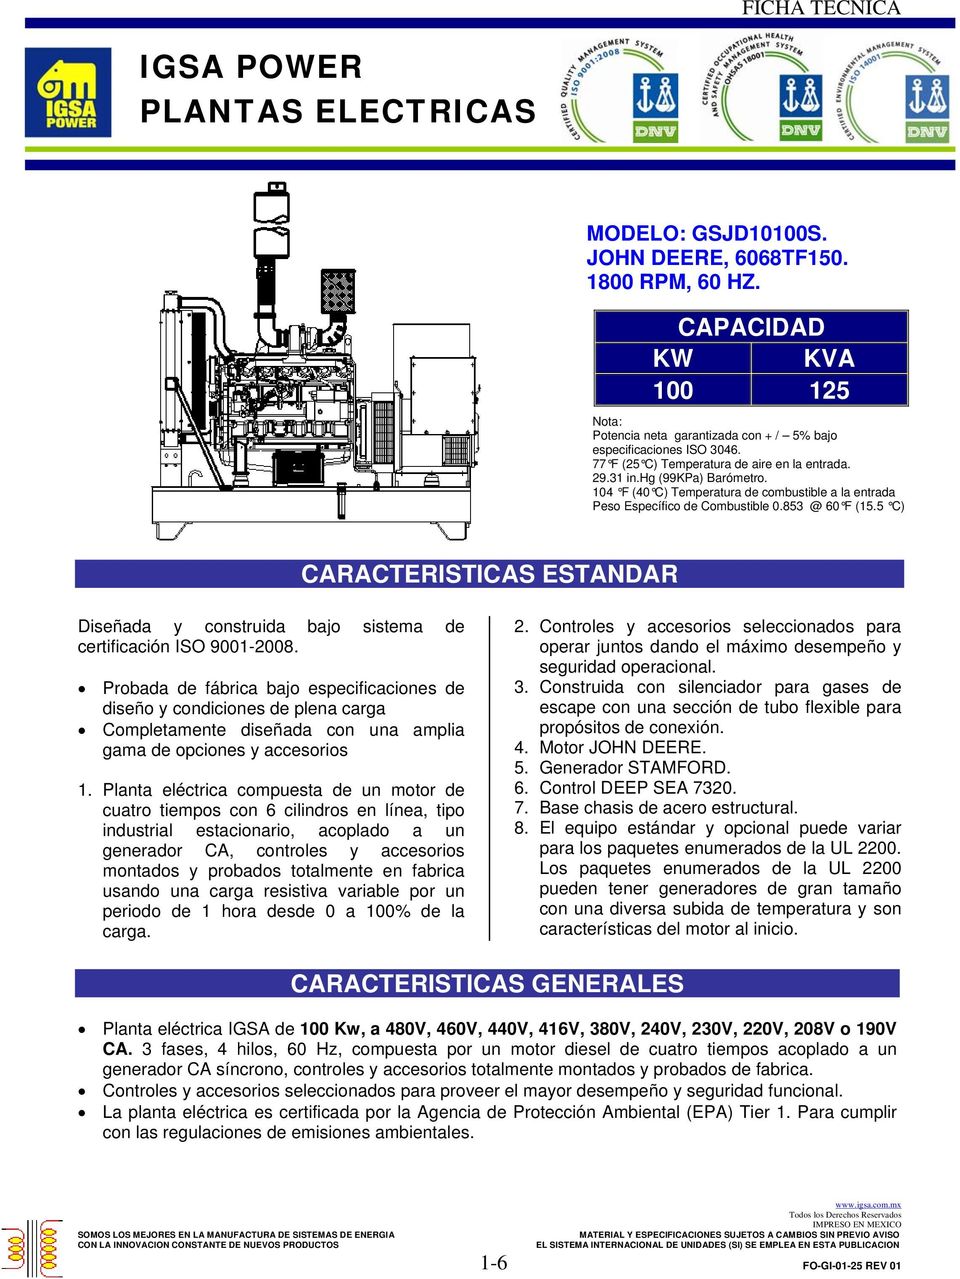 5 C) CARACTERISTICAS ESTANDAR Diseñada y construida bajo sistema de certificación ISO 9001-2008.